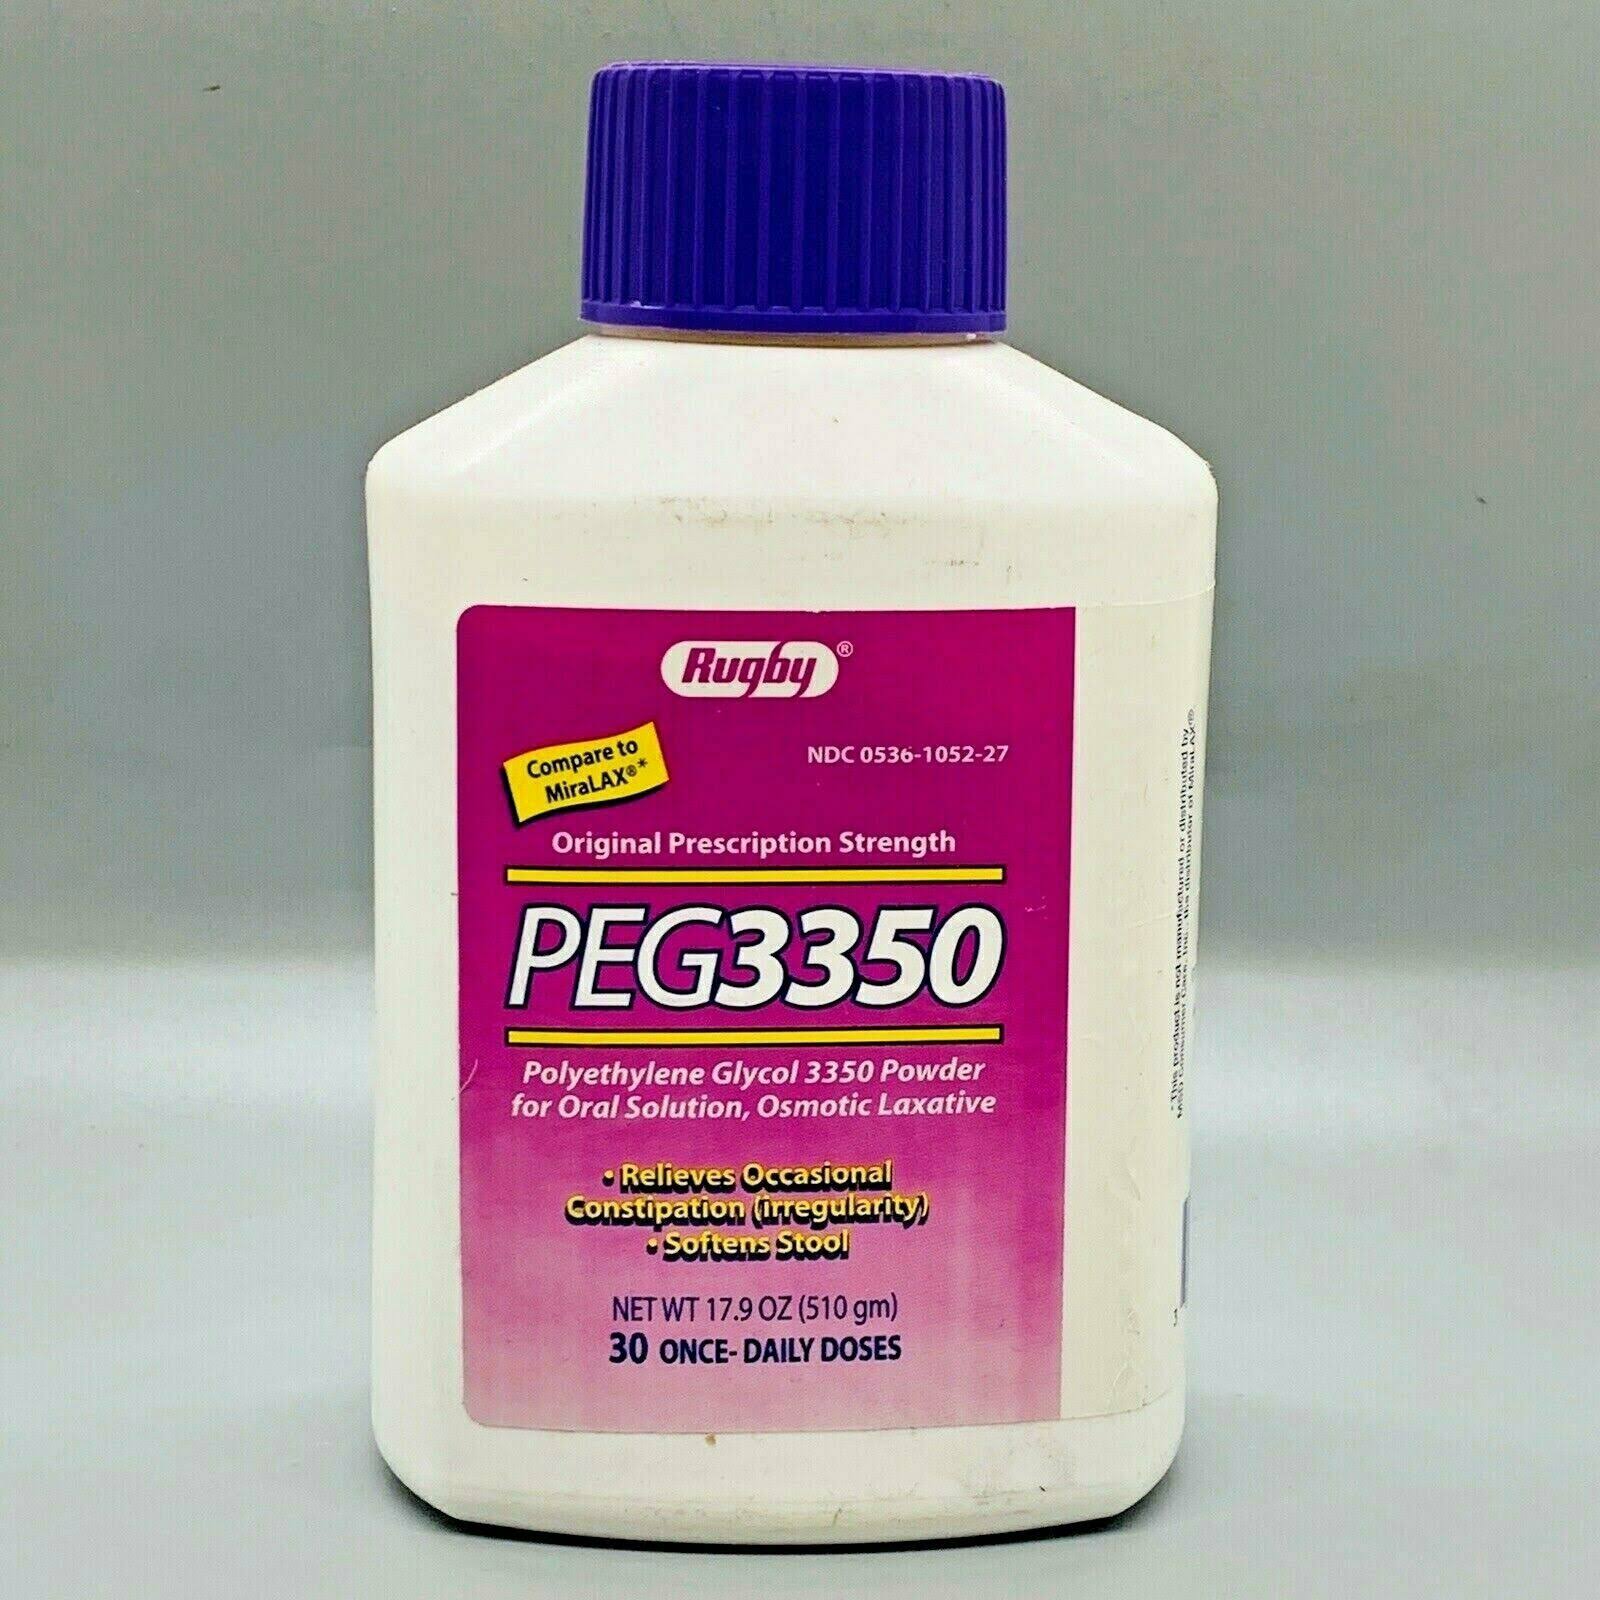 Rugby Polyethylene Glycol 3350 Powder, 17.9oz